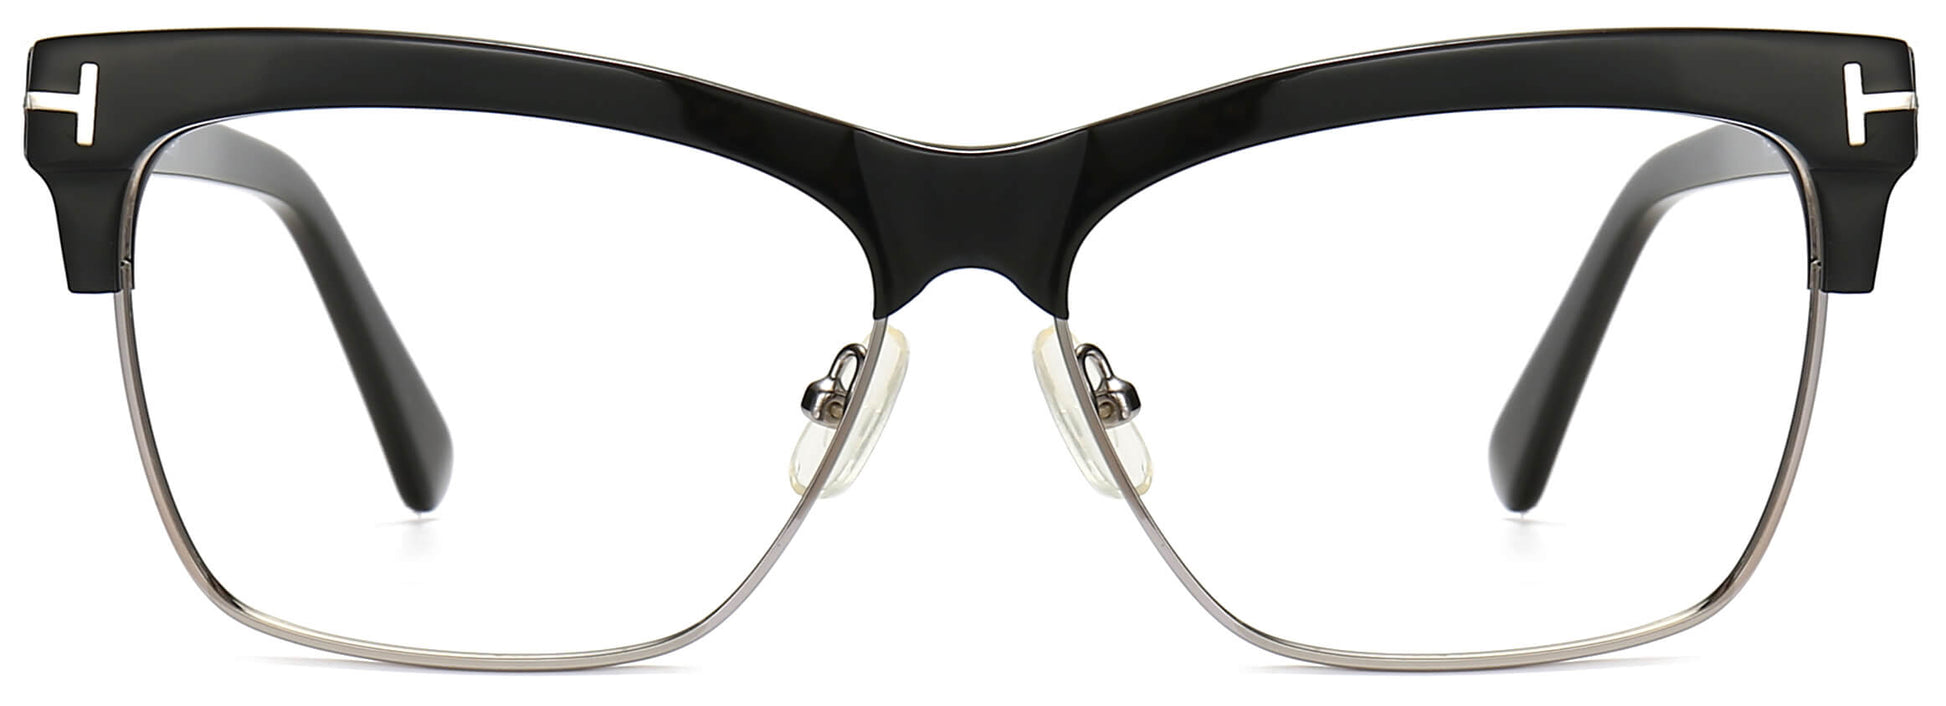 Kiaan Cateye Black Eyeglasses from ANRRI, front view